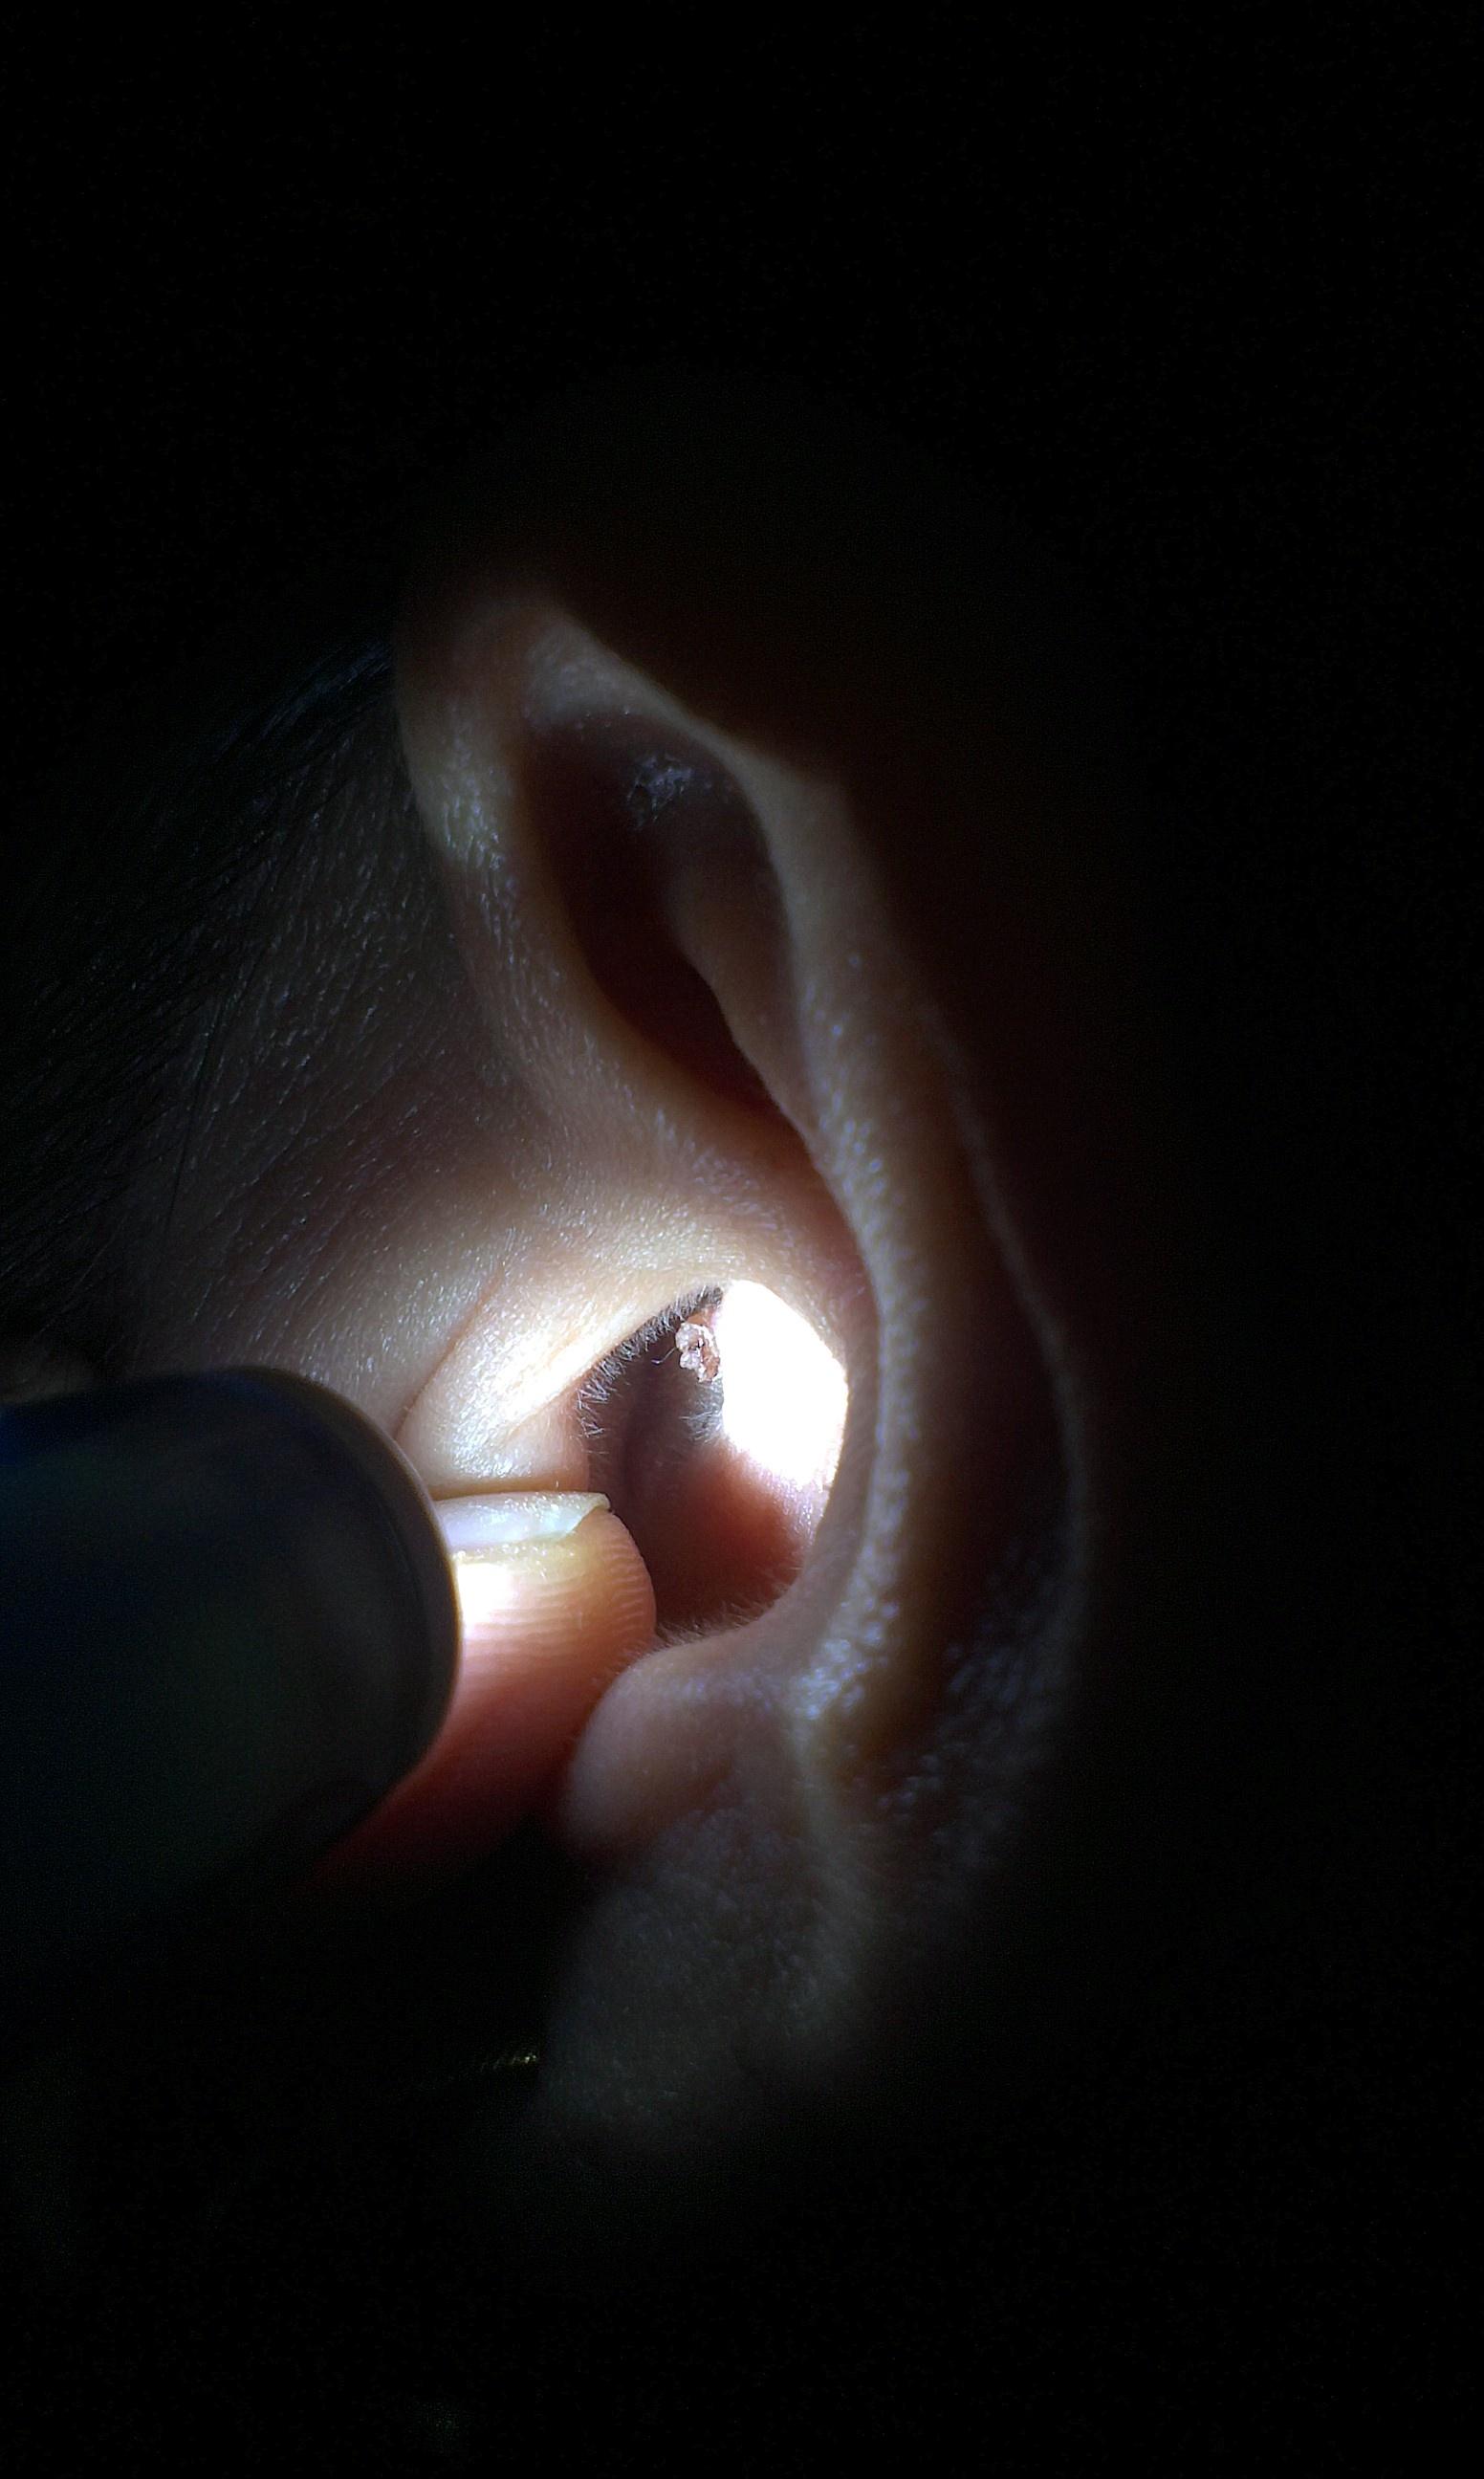 外耳道寻常疣图片